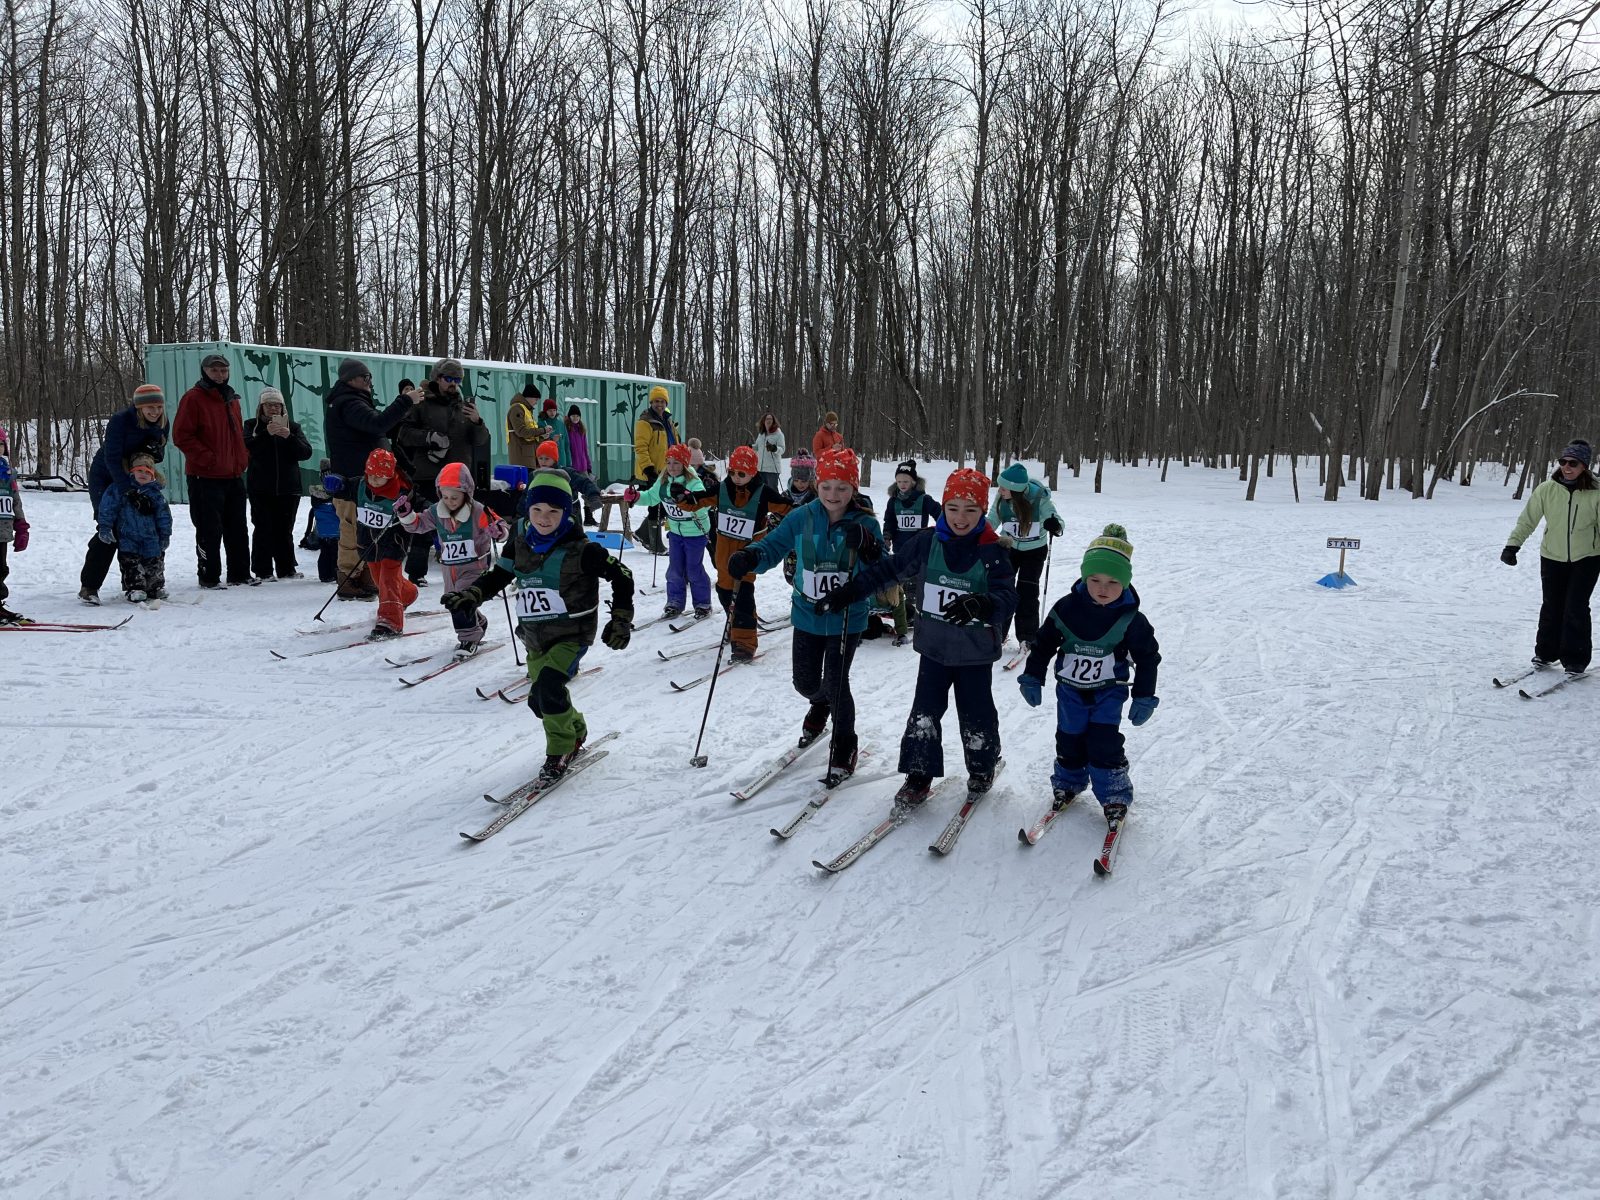 Second Skifest Challenge at the Summerstown Trails